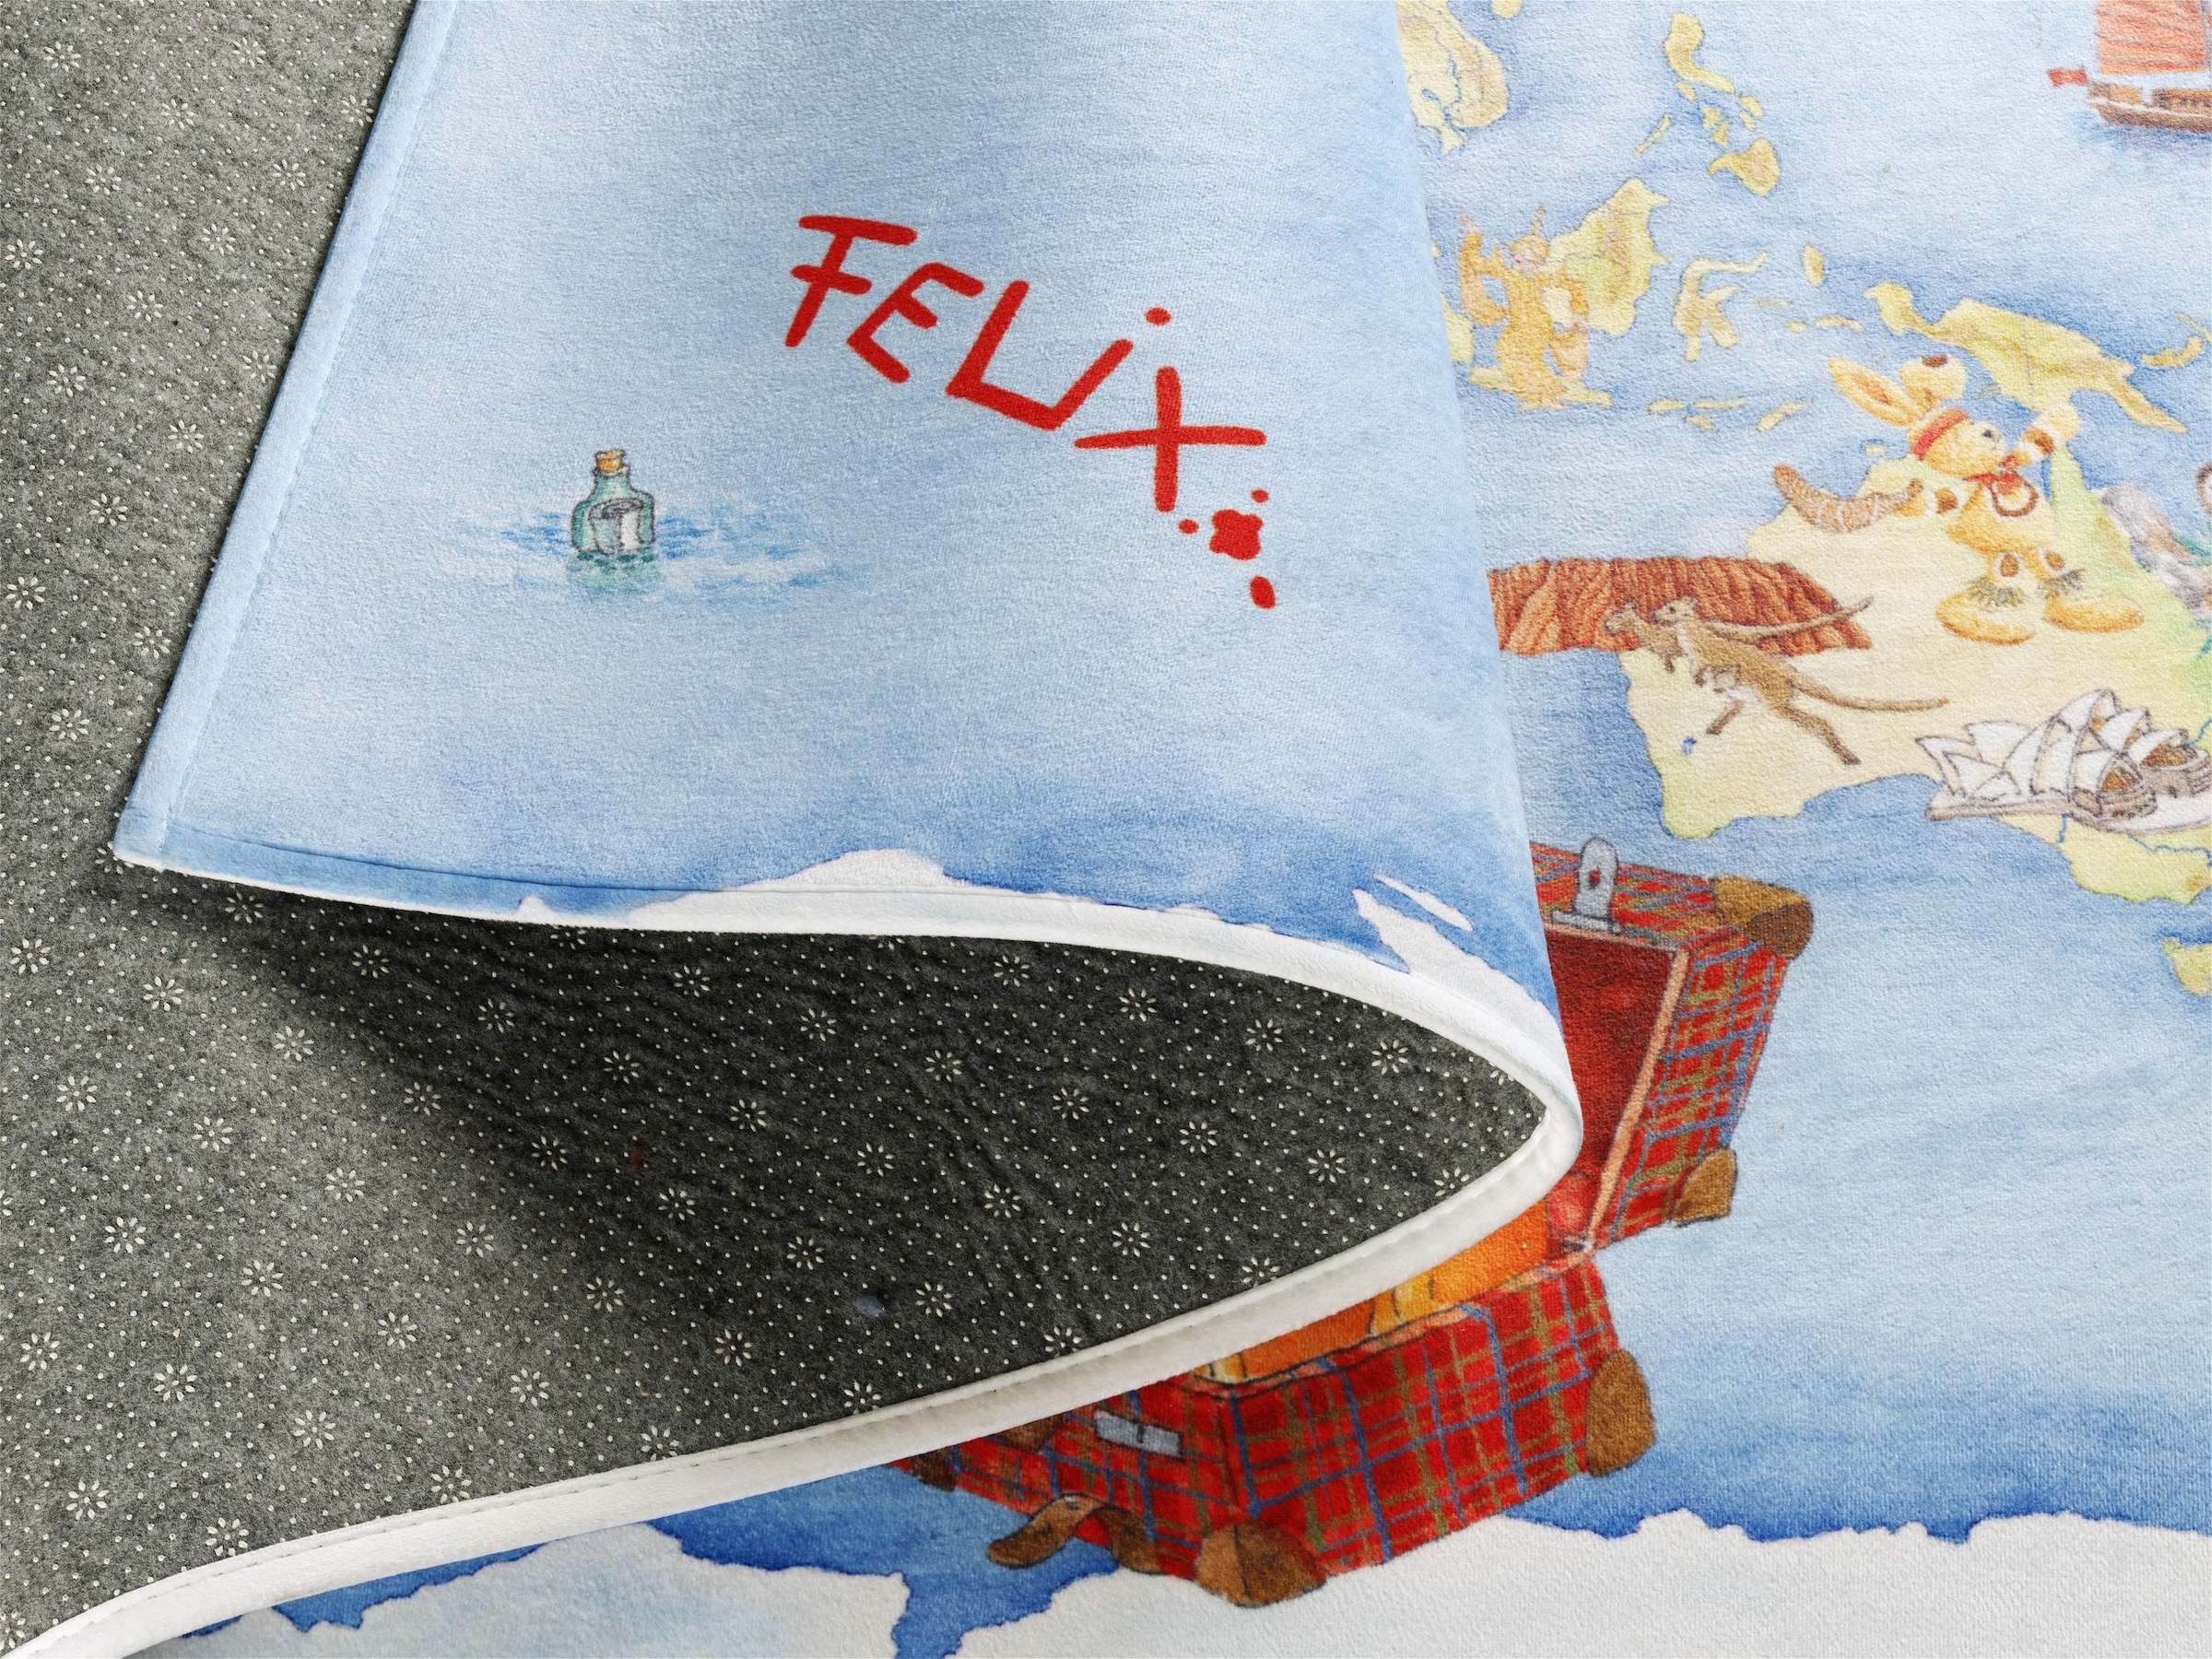 Felix der Hase Kinderteppich »FE-410«, rechteckig, Stoff Druck, Motiv Weltkarte, weiche Mircofaser, Kinderzimmer